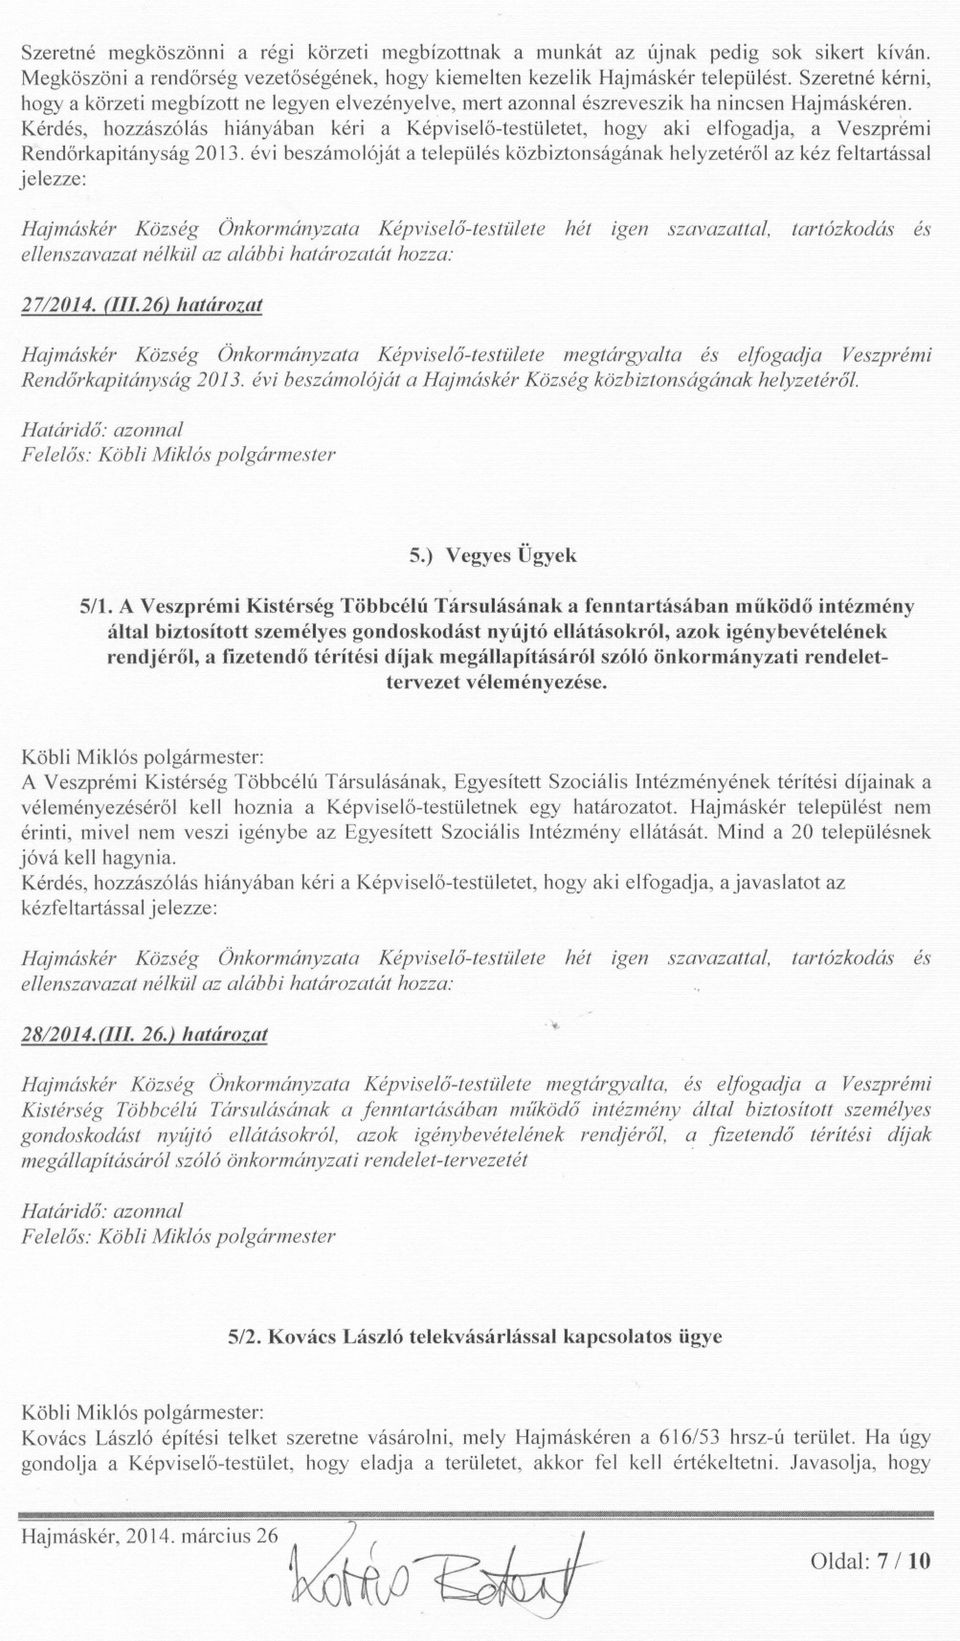 Kérdés, hozzászólás hiányában kéri a Képviselo-testületet, hogy aki elfogadja, a Veszprémi Rendorkapitányság 2013.